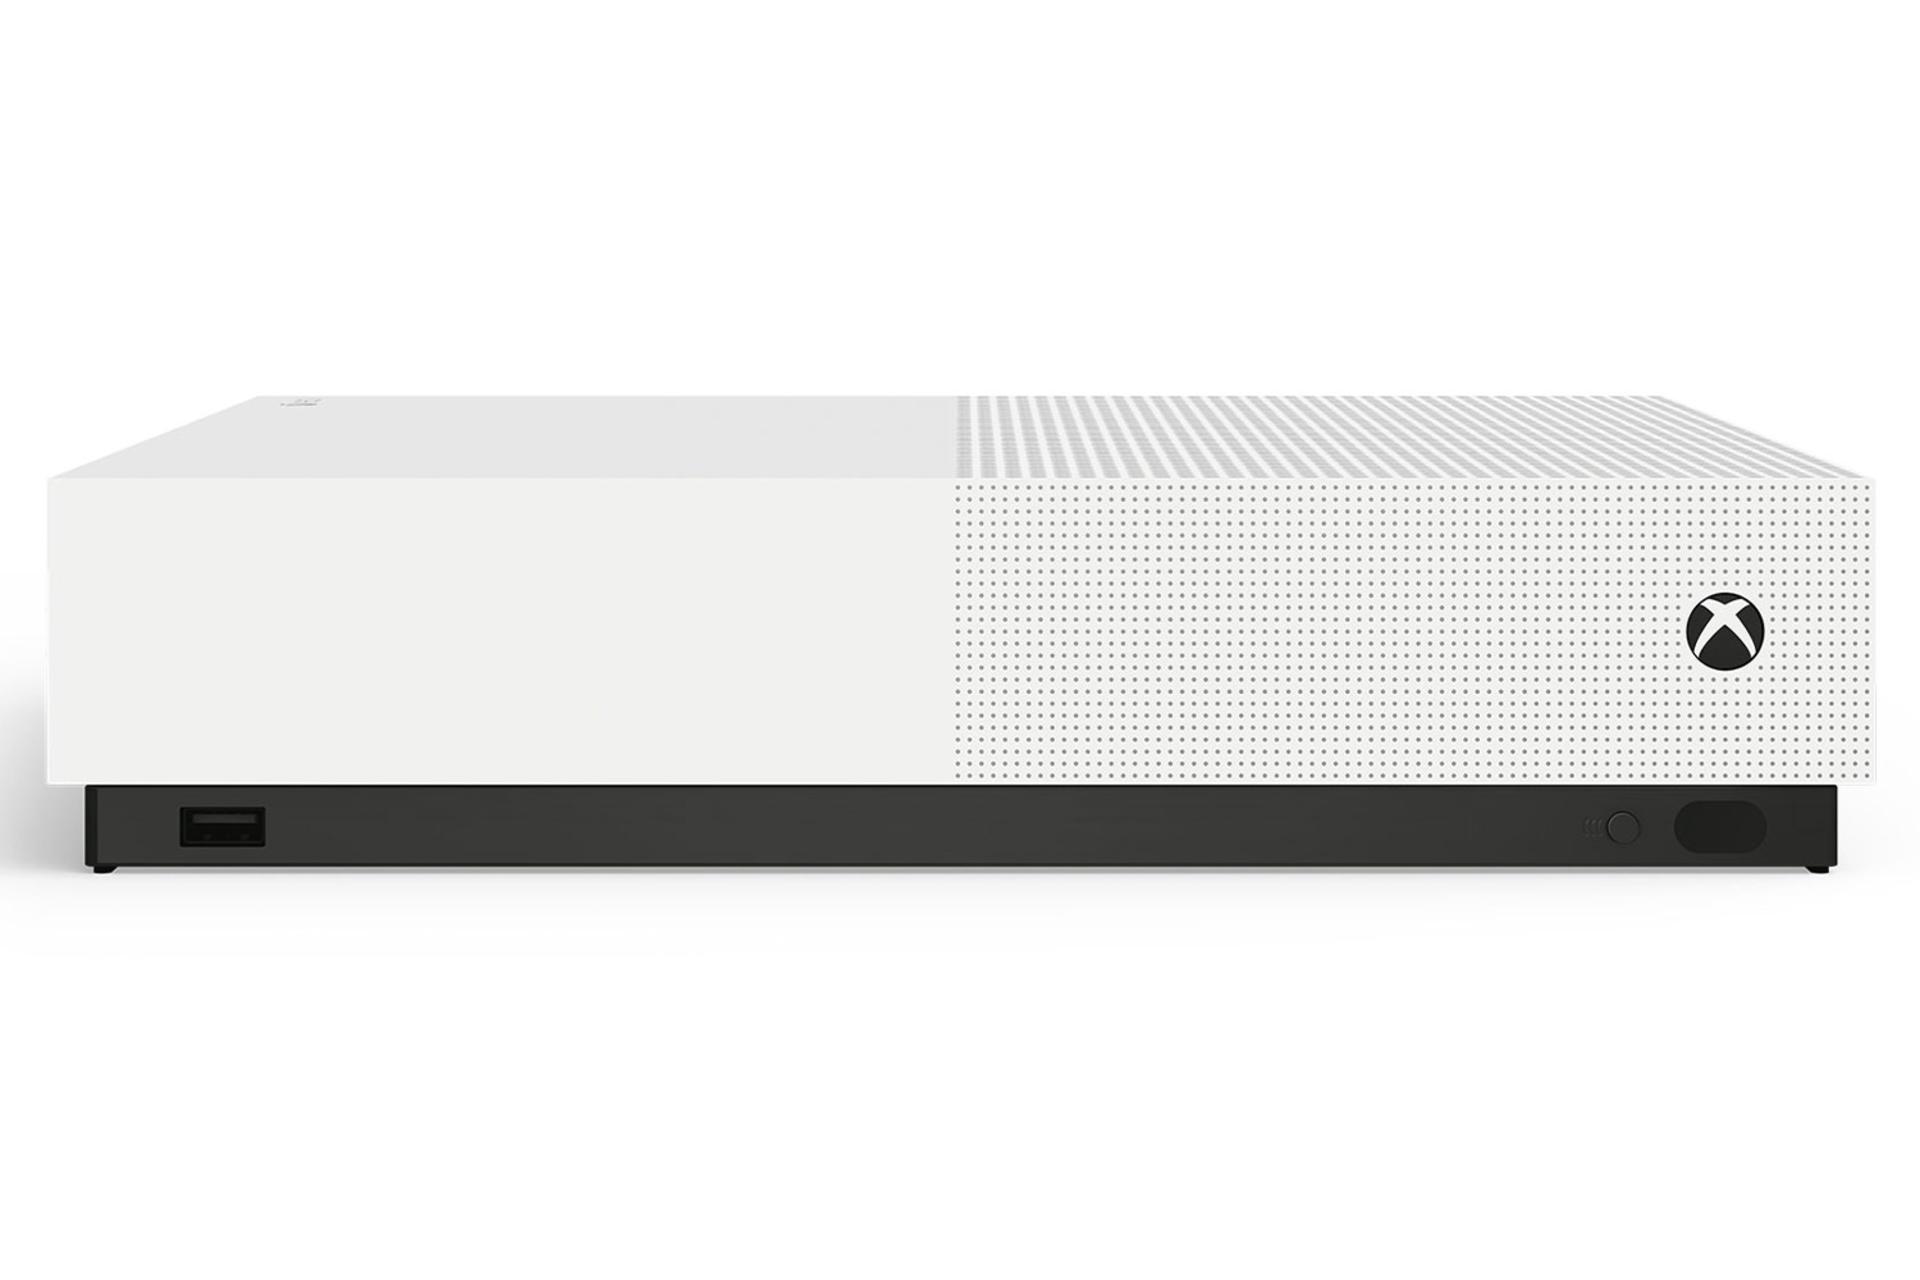 کنسول مایکروسافت ایکس باکس وان اس مدل دیجیتال - نمای جلو و رنگ سفید / Xbox One S